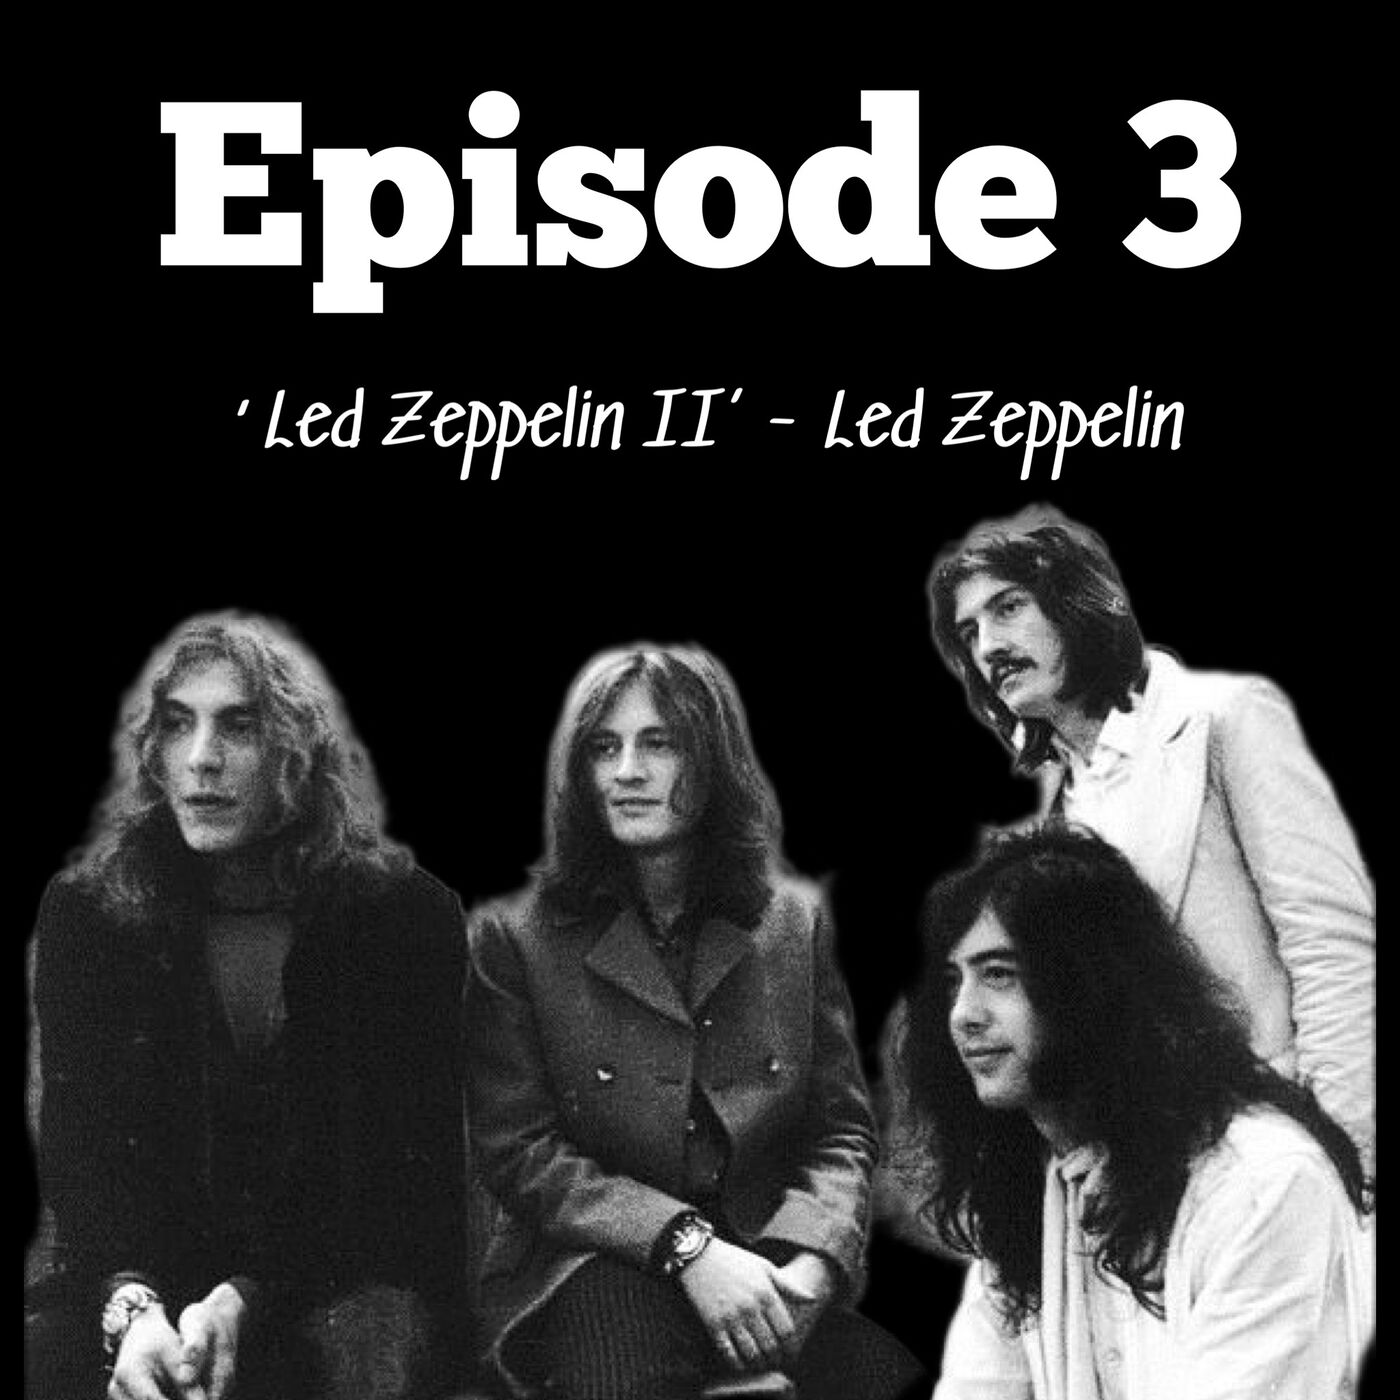 3. ’Led Zeppelin II’ - Led Zeppelin (1969)